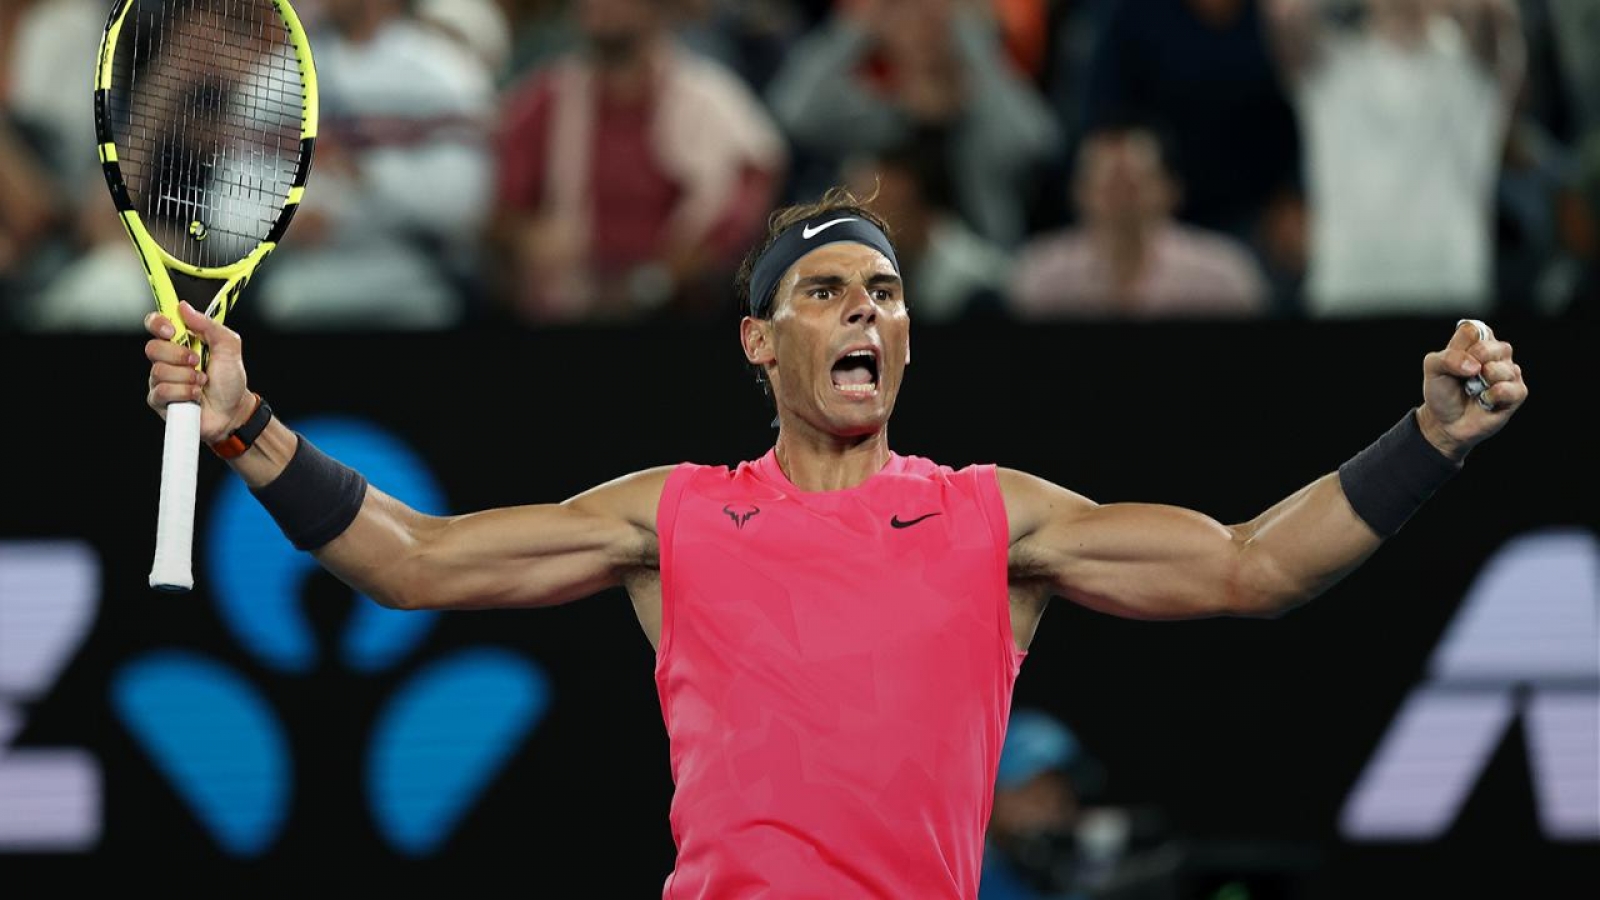 Rafael Nadaldan ABD Açık kararı! - Son Dakika Spor Haberleri